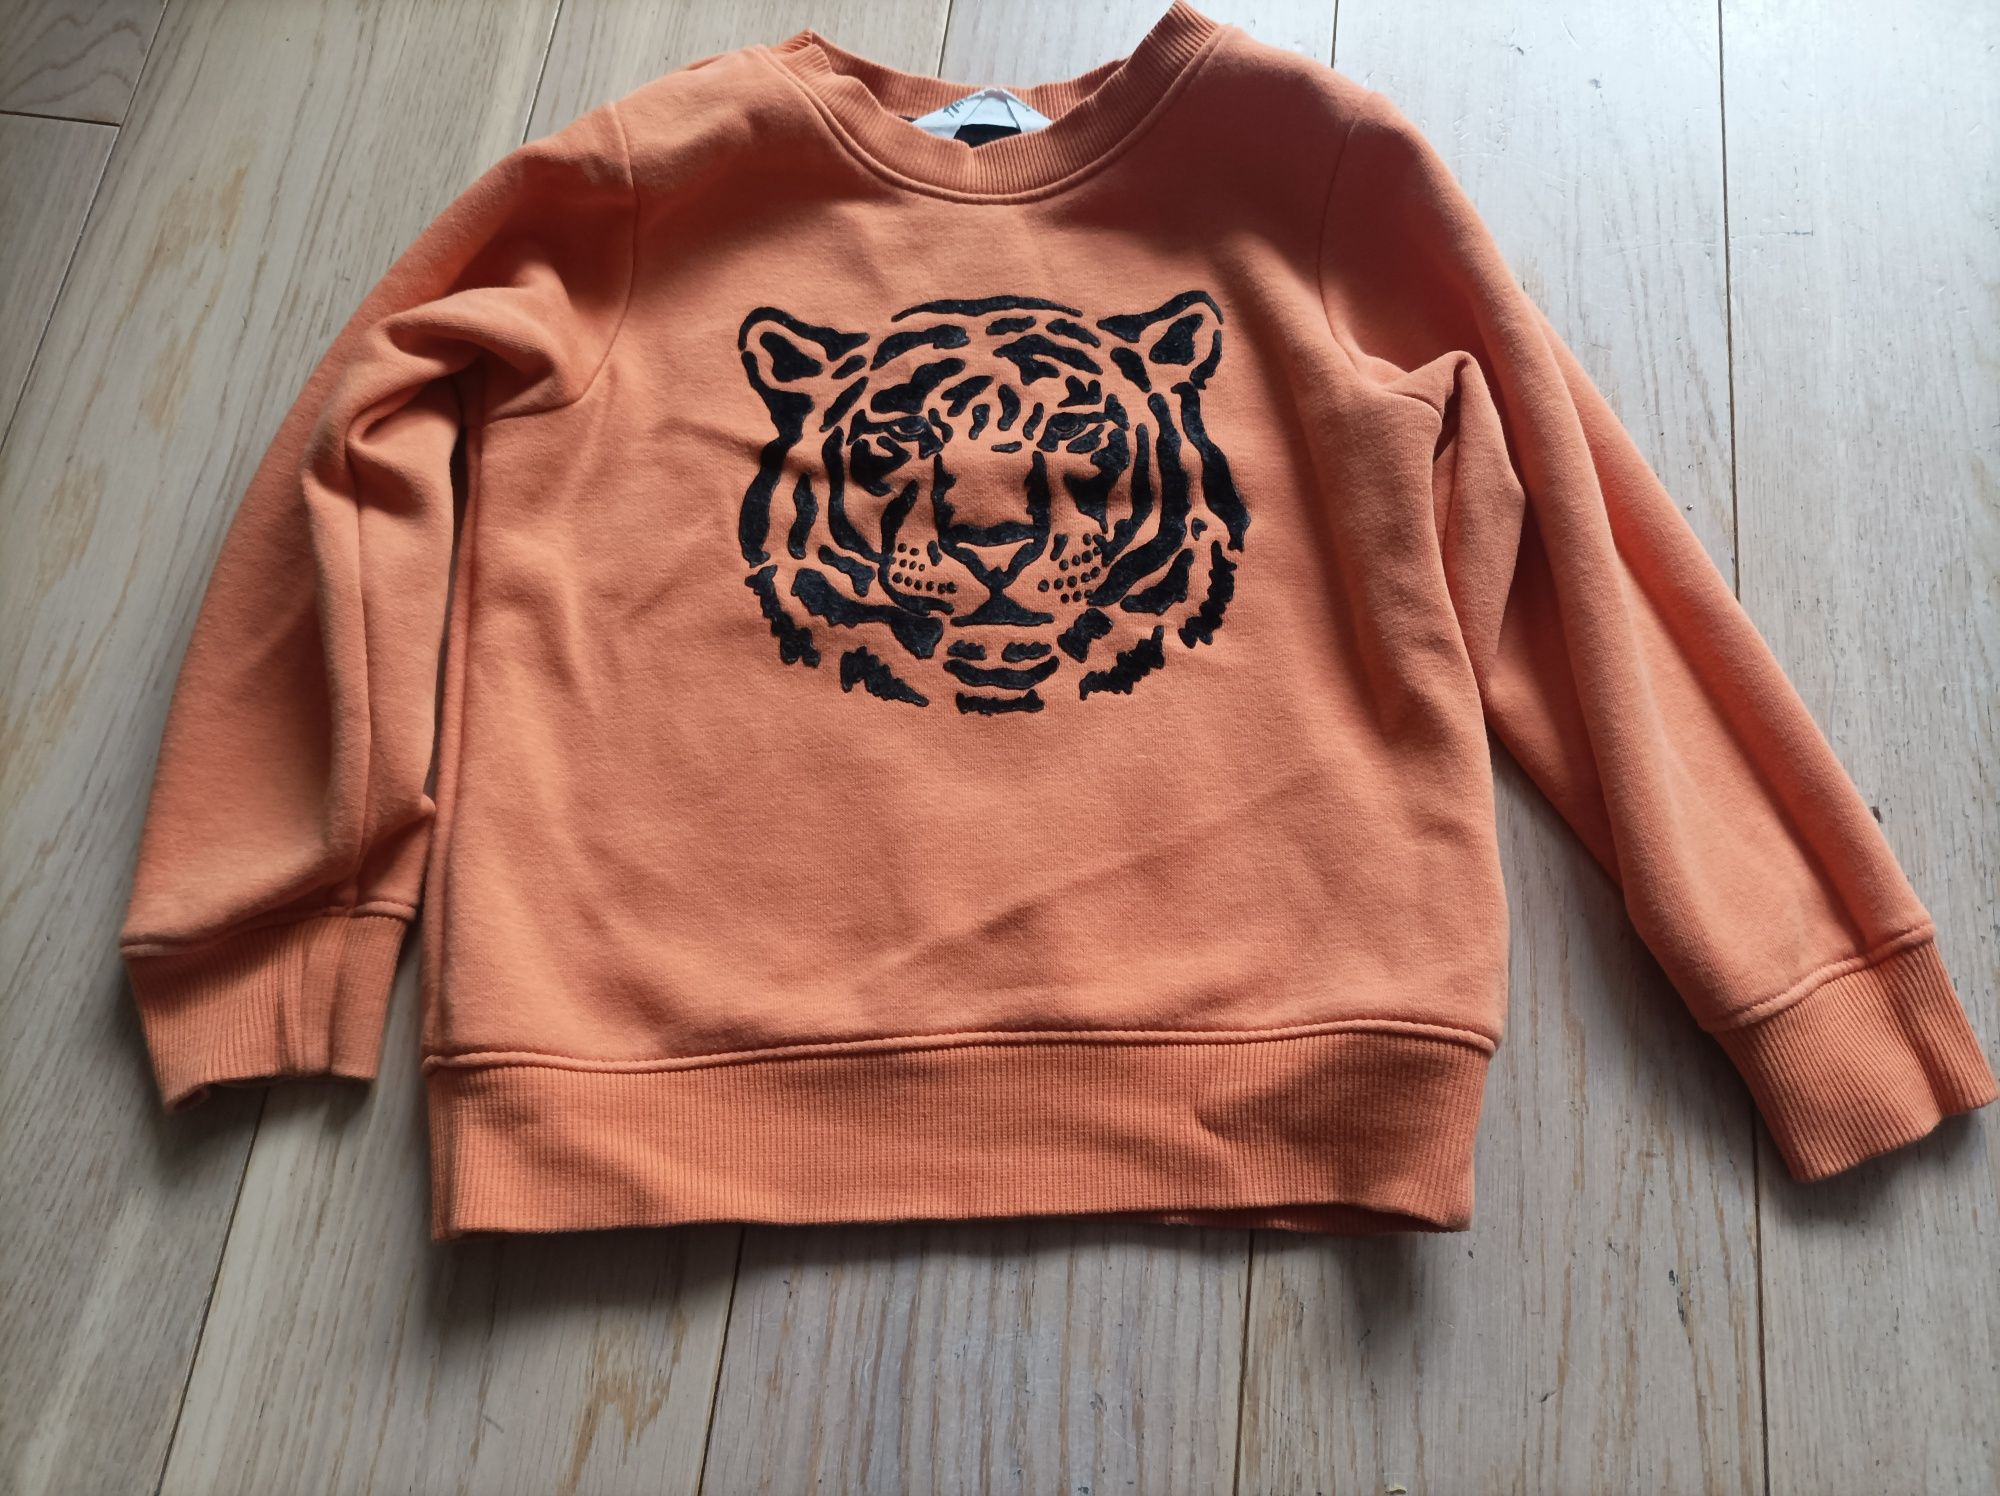 Bluza chłopięca H&M rozmiar 98/104 kolor pomarańczowy z tygrysem.